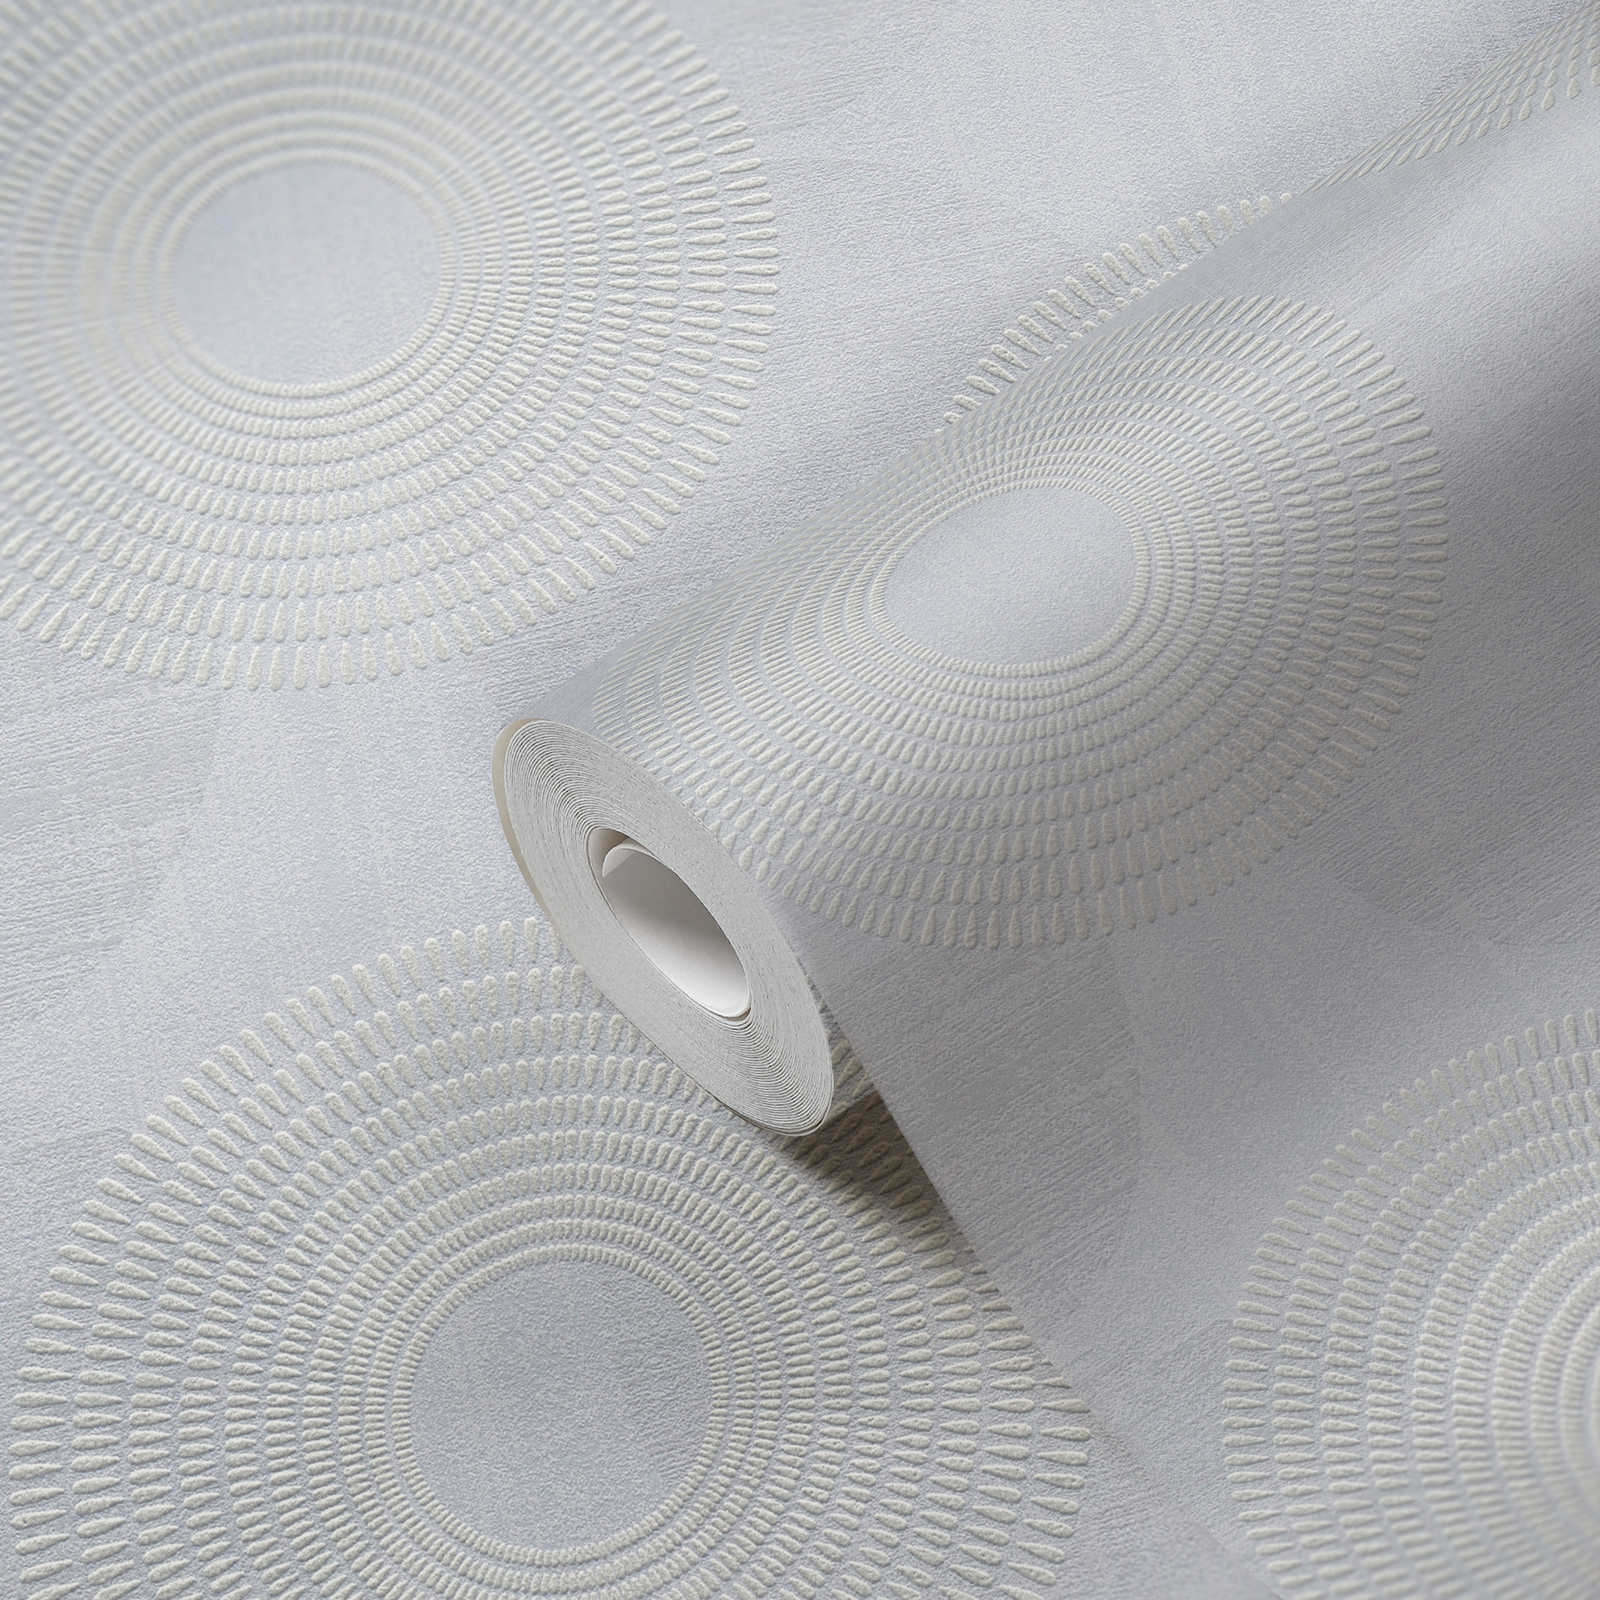             Papel pintado no tejido con diseño geométrico de círculos - gris
        